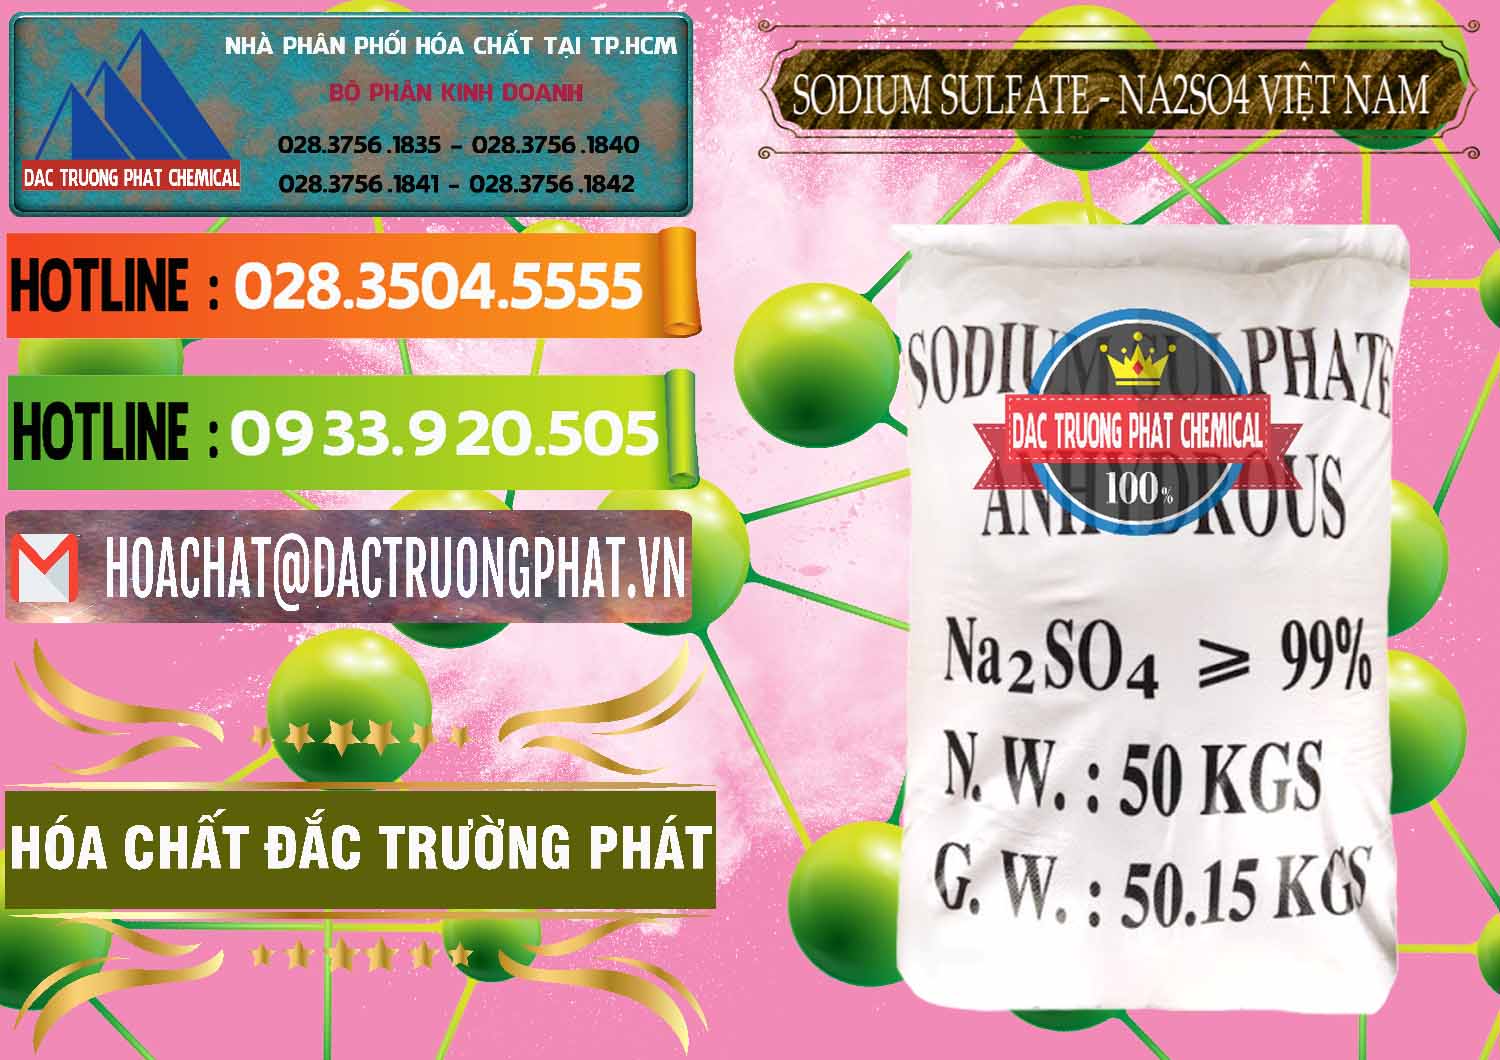 Cty phân phối ( kinh doanh ) Sodium Sulphate - Muối Sunfat Na2SO4 Việt Nam - 0355 - Công ty chuyên kinh doanh và bán hóa chất tại TP.HCM - cungcaphoachat.com.vn